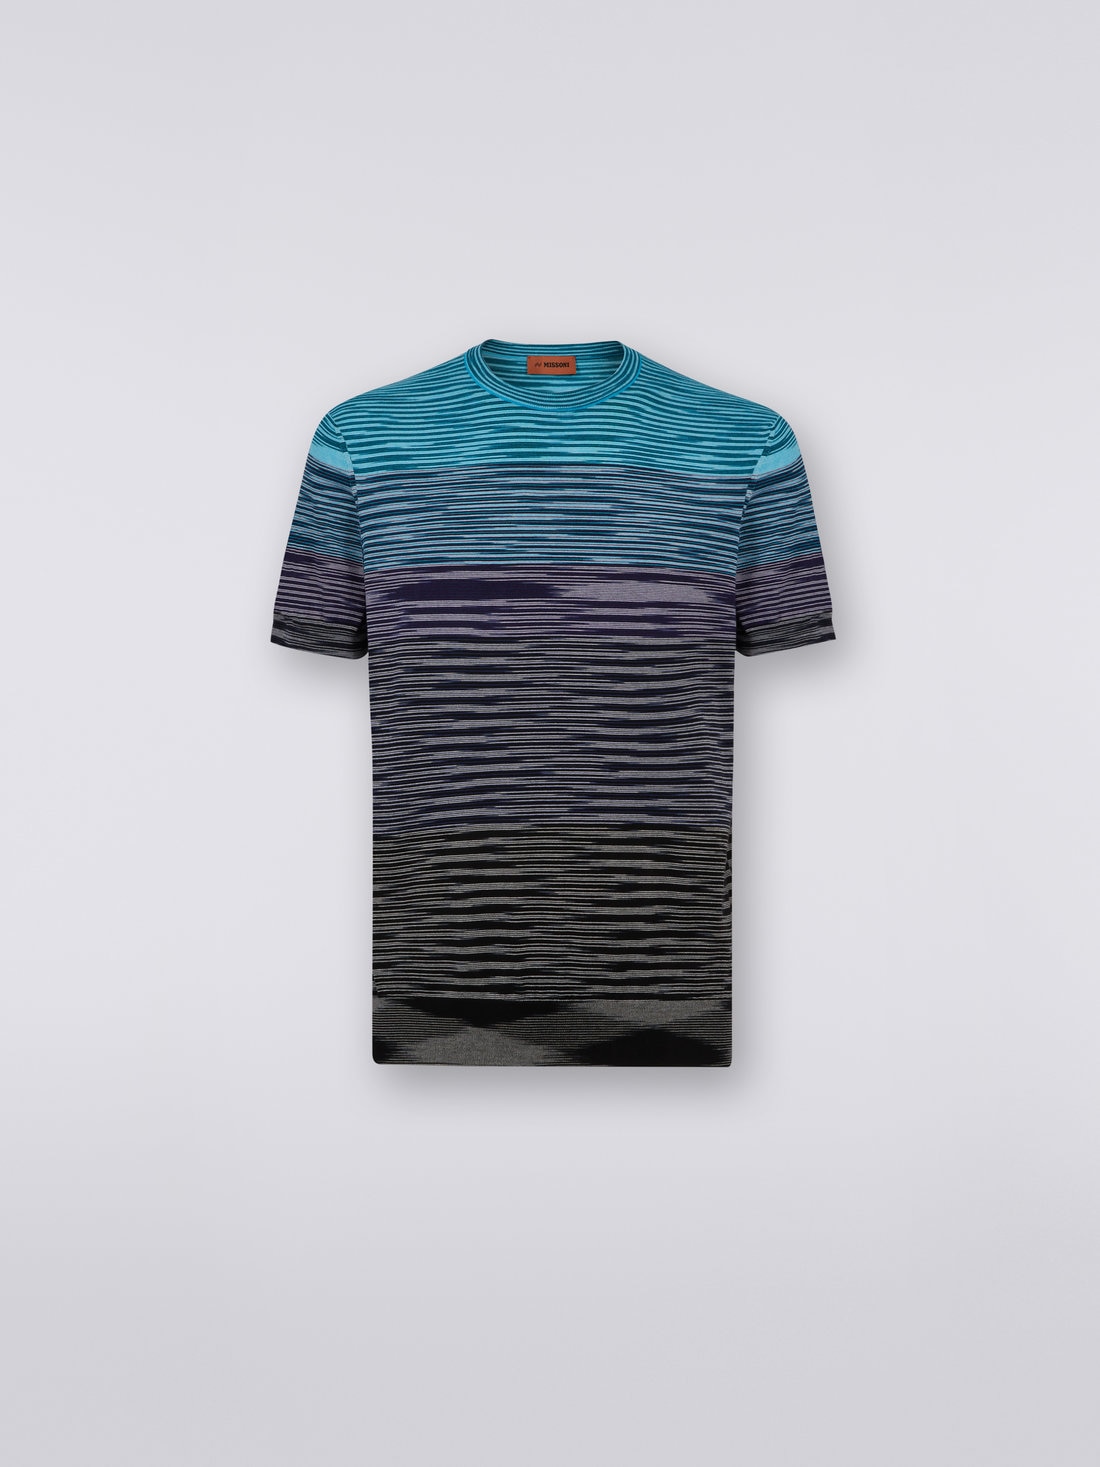 Short-sleeved crew-neck T-shirt in cotton knit with dégradé stripes, Blue, Purple & Black - US23SL1CBK012QS91DS - 0